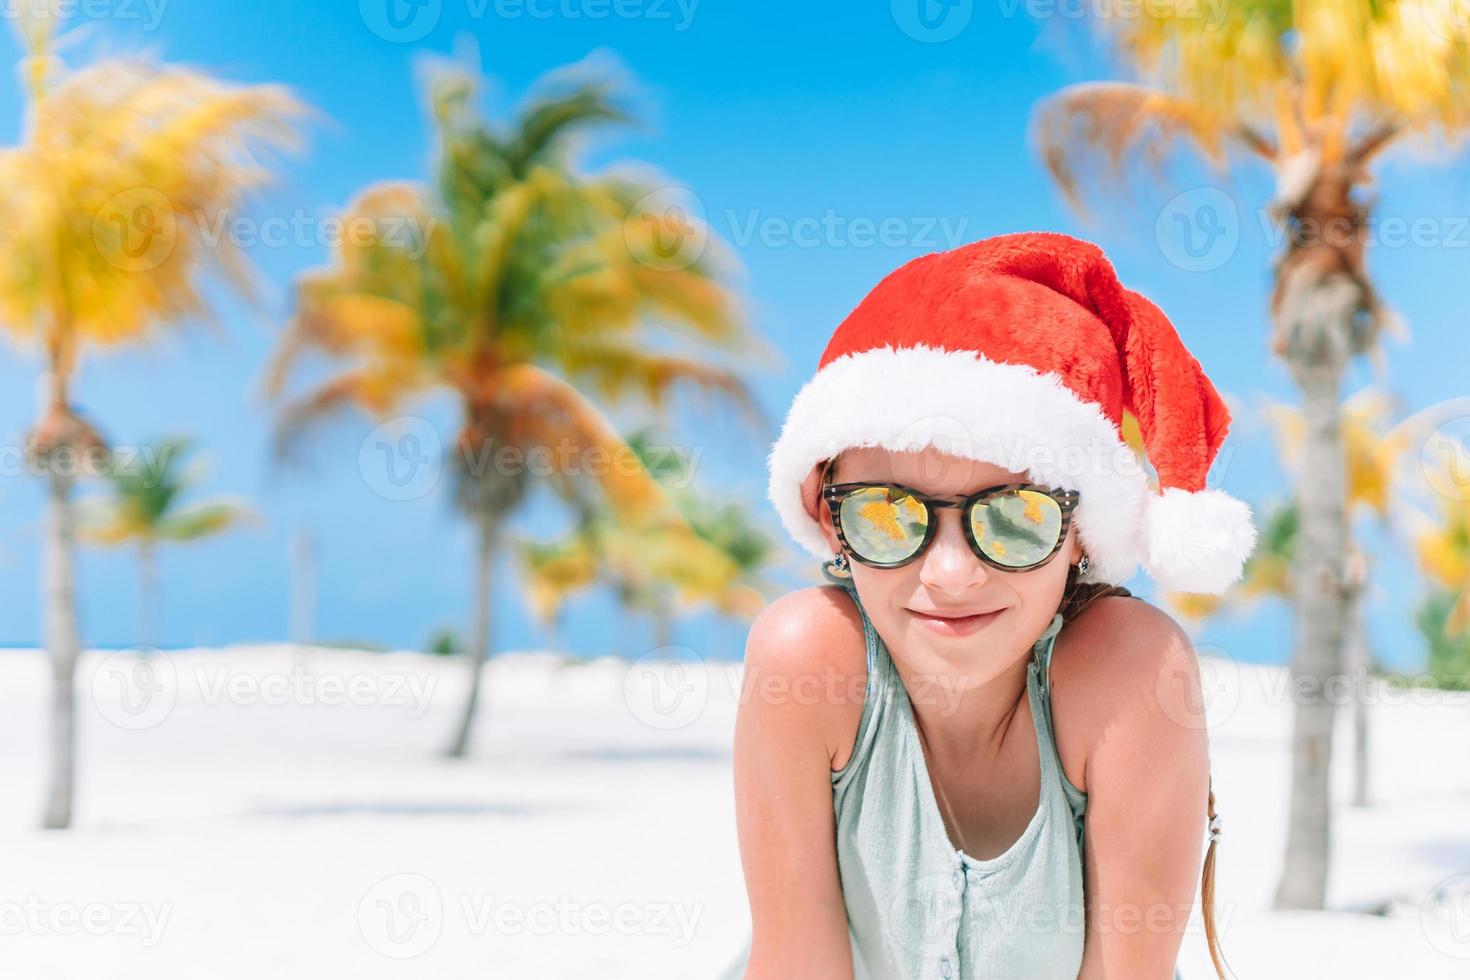 adorable niña con sombrero de santa durante las vacaciones navideñas en la playa foto